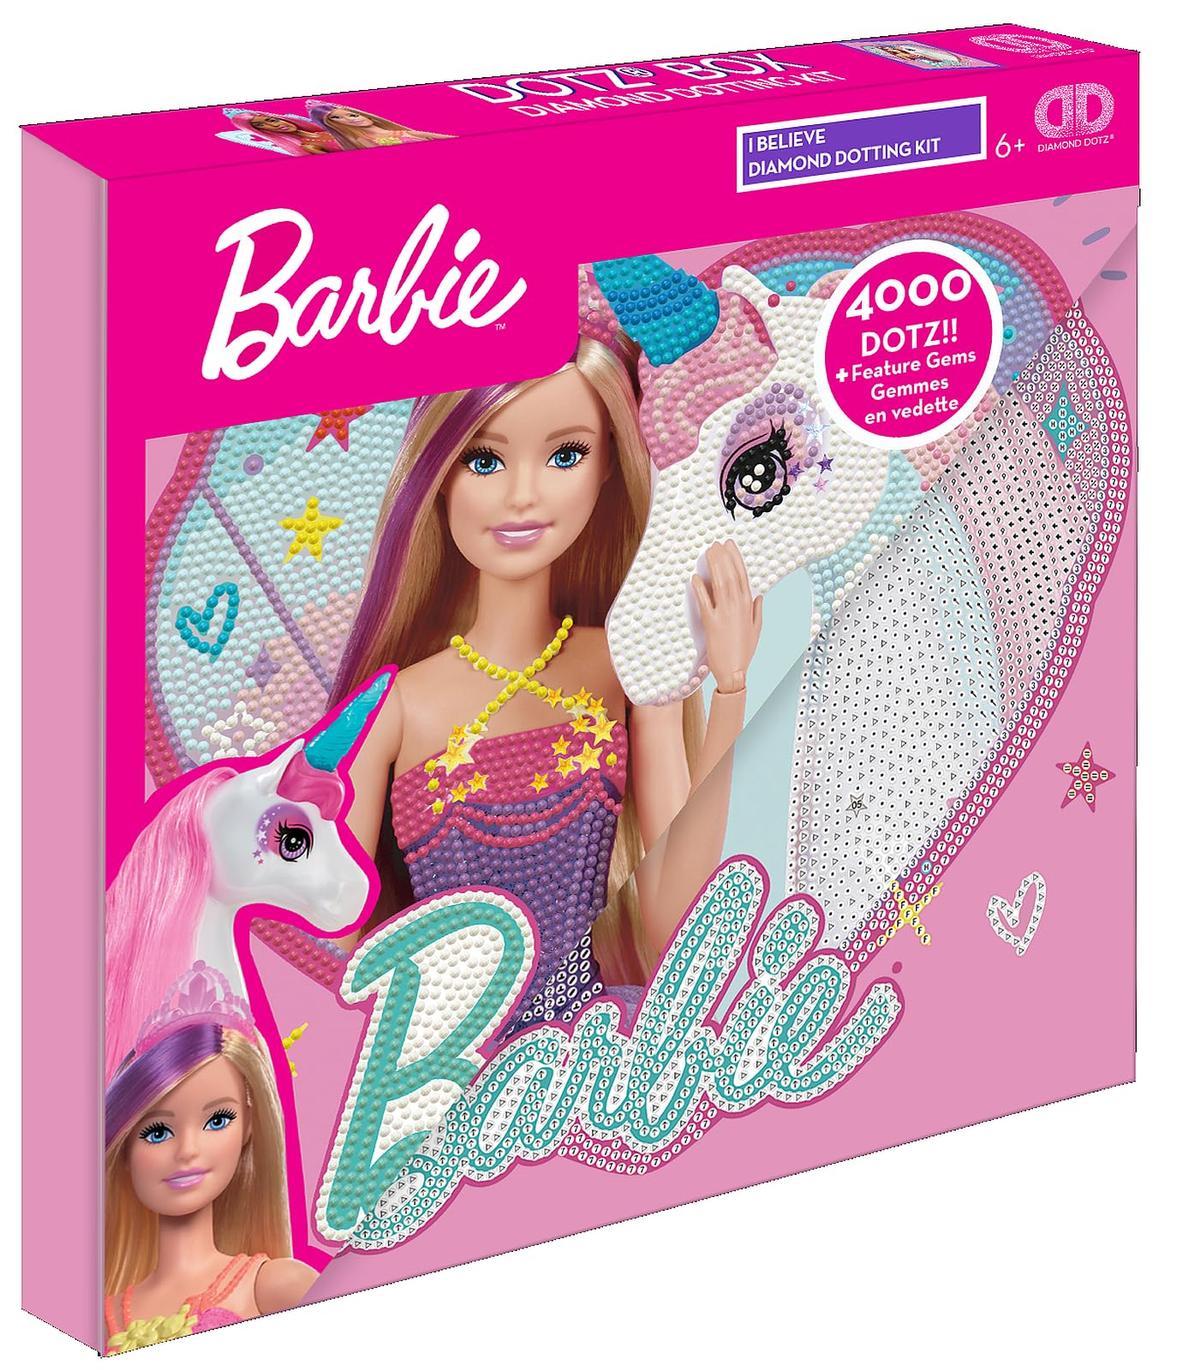 Diamond Dotz Barbie I Believe